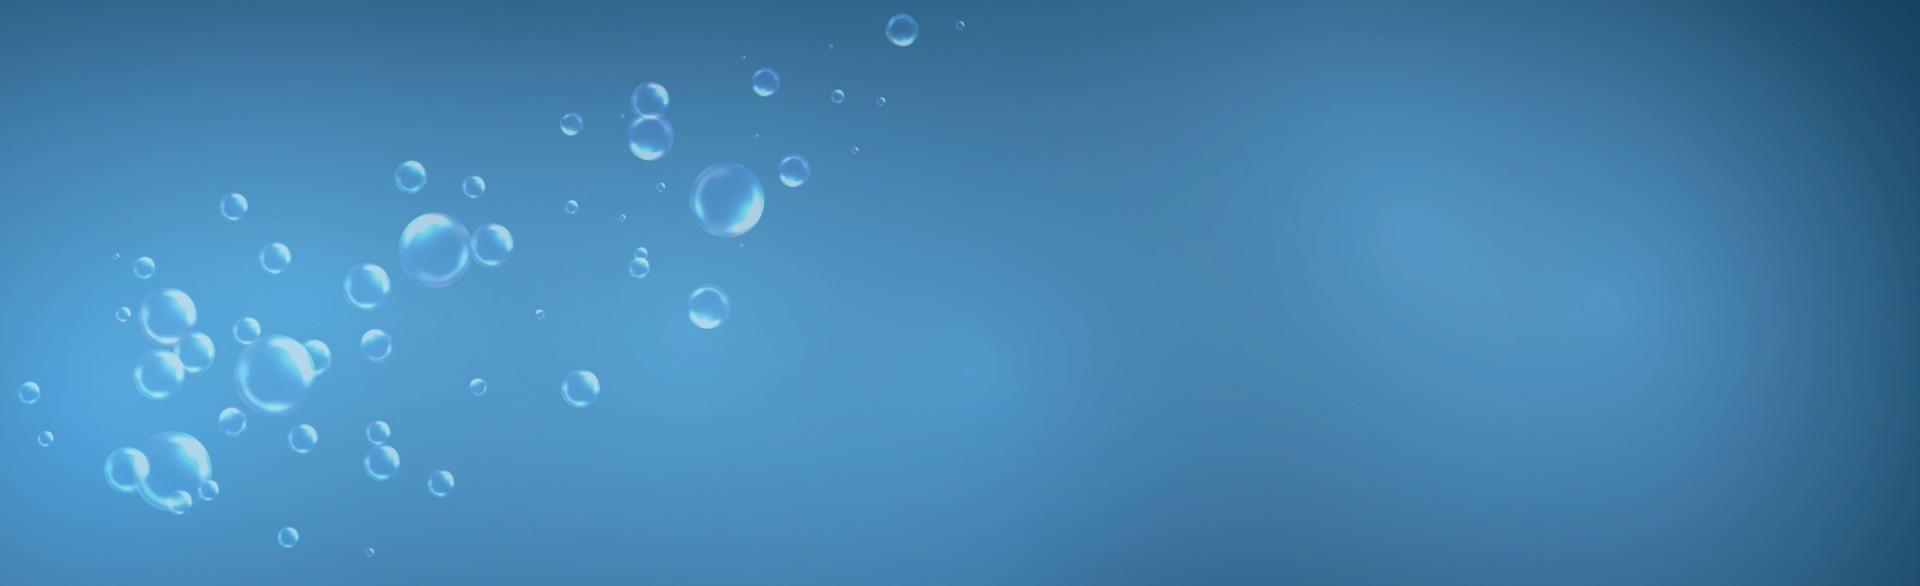 bulles d'air de différentes tailles sur fond clair vecteur